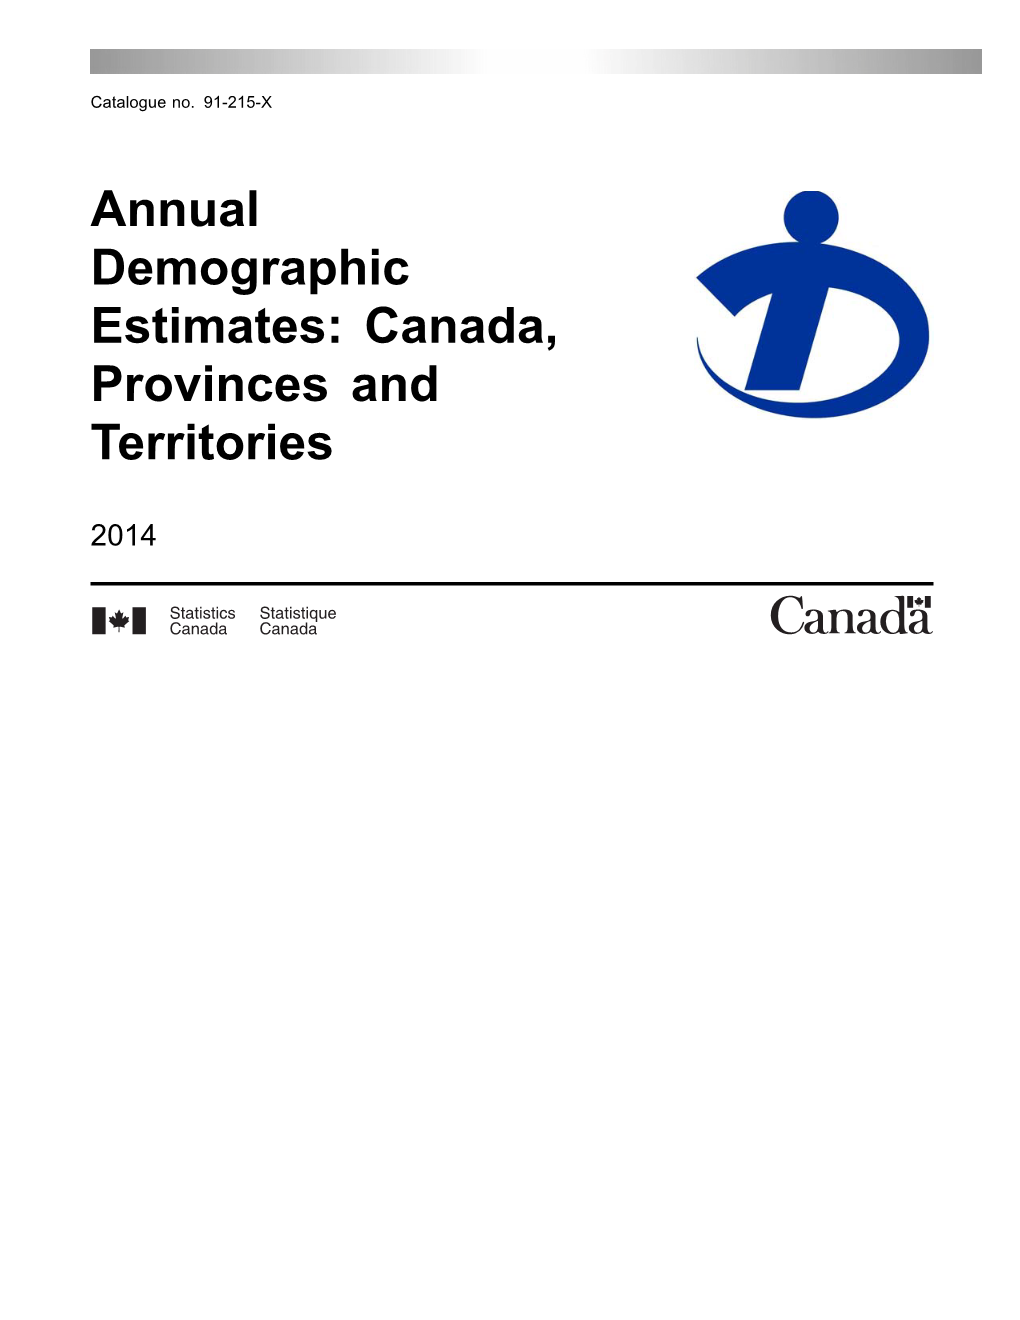 Annual Demographic Estimates: Canada, Provinces and Territories